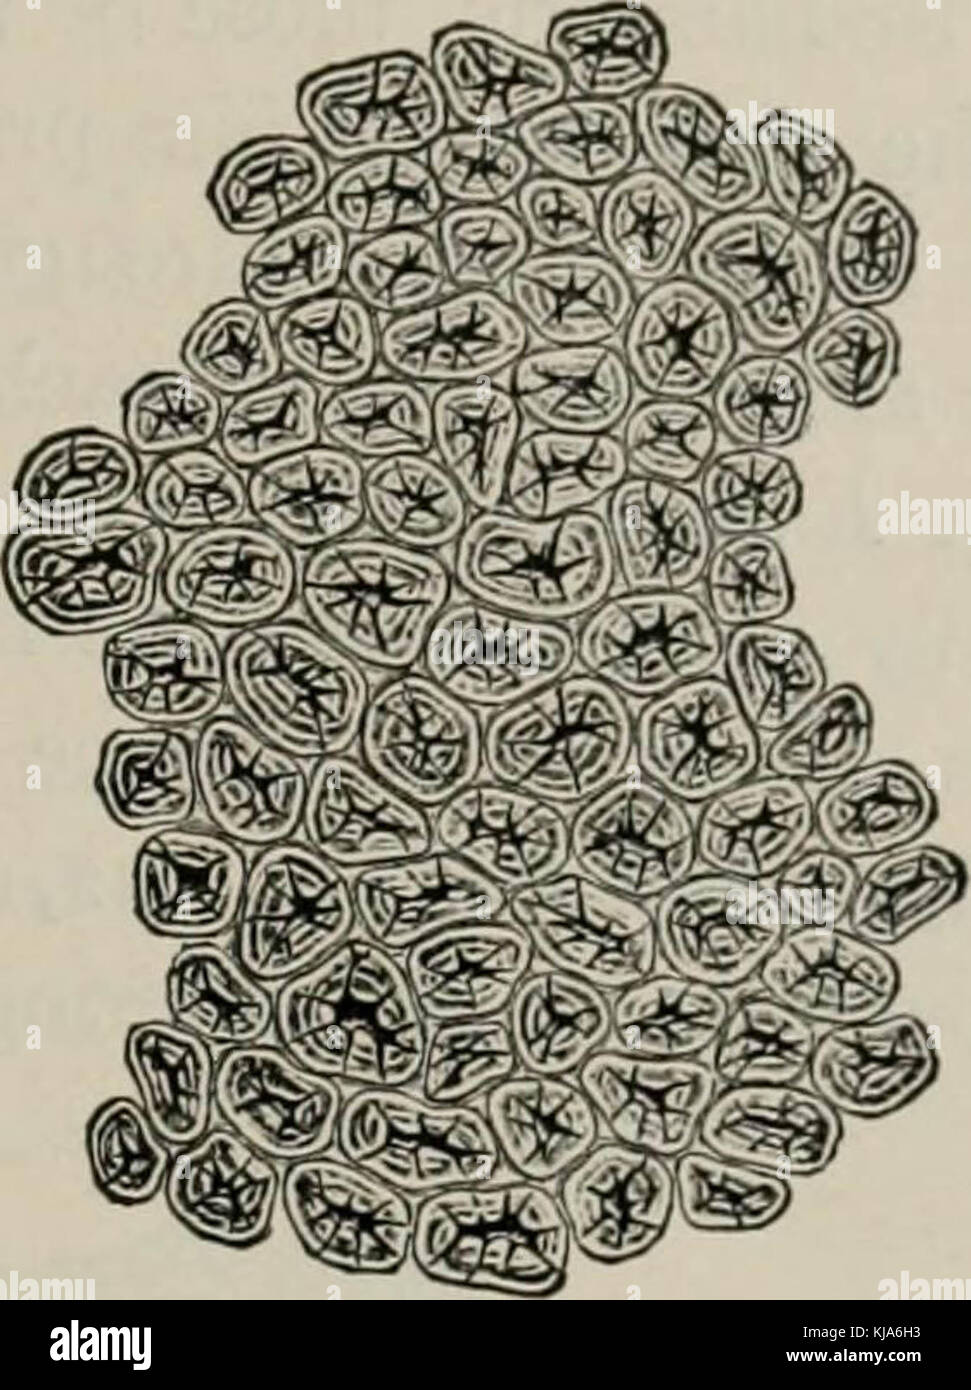 'La microscopie des aliments végétaux, avec une référence spéciale à la détection de l'adultération et au diagnostic des mélanges' (1916) Banque D'Images